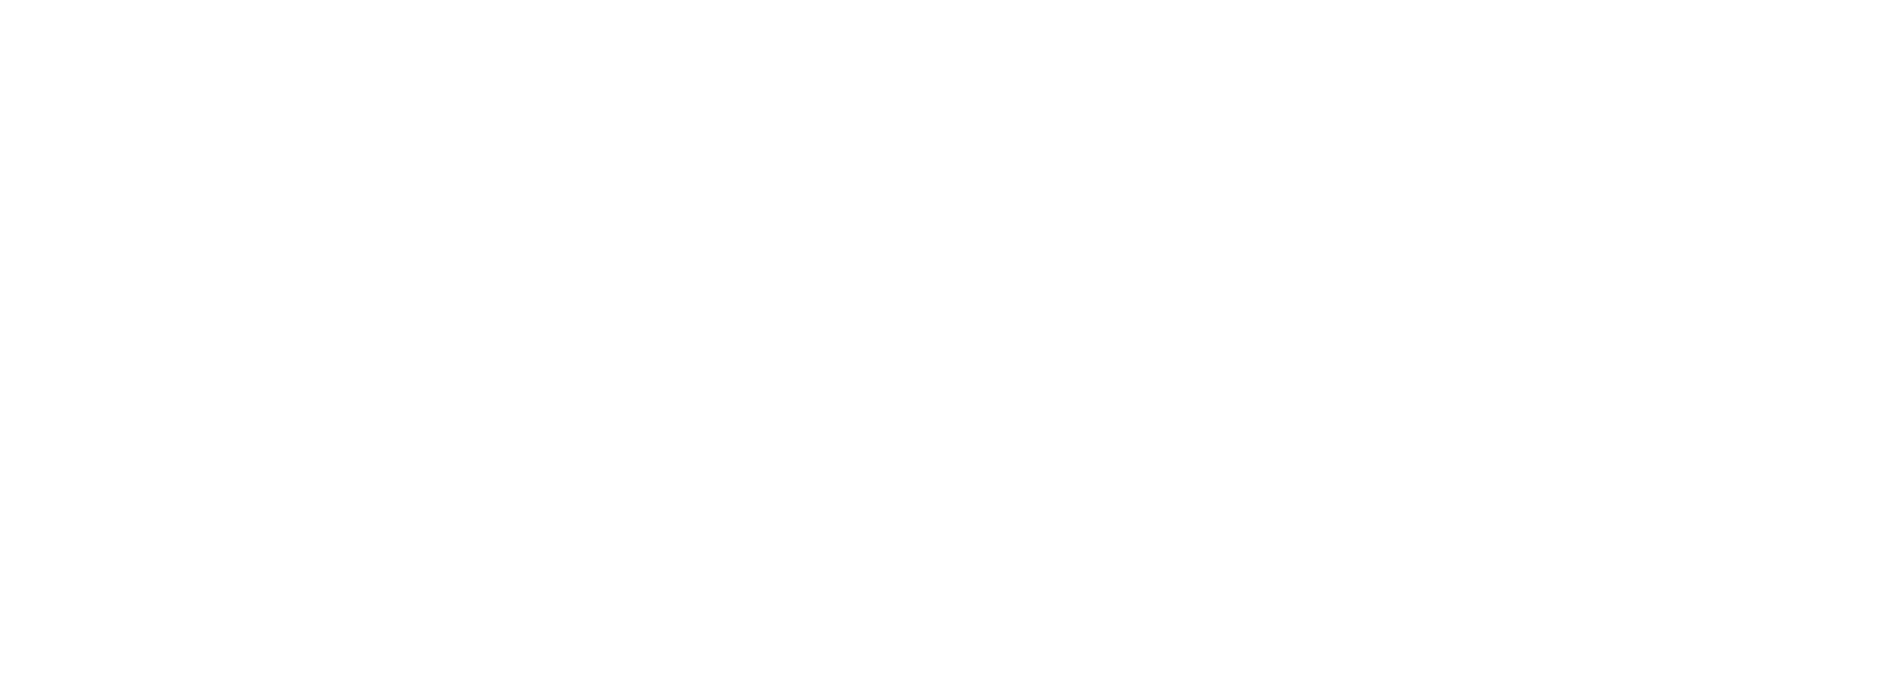 Digitiv